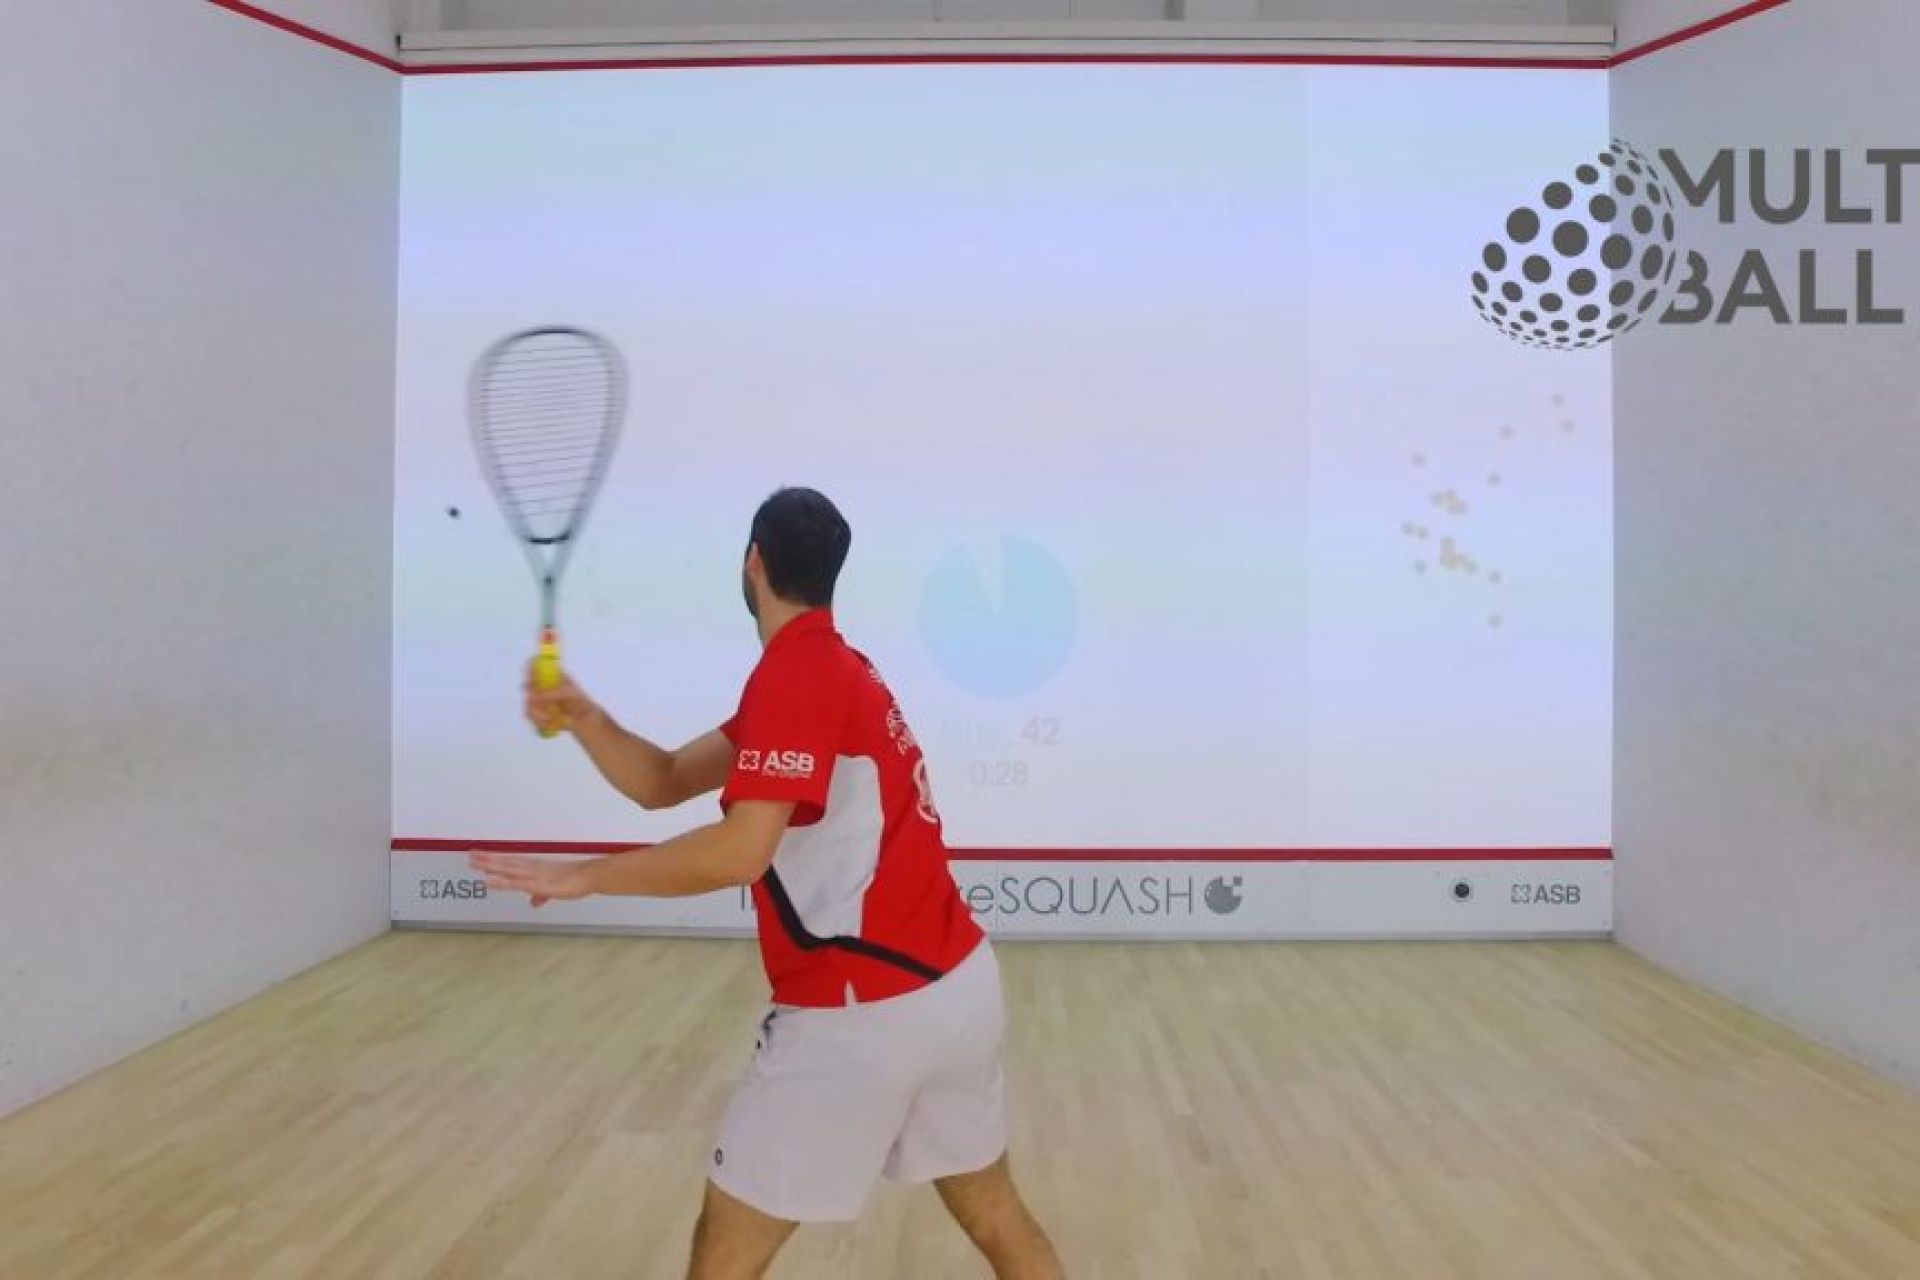 Jeu de squash interactif, combinant jeu vidéo et sport